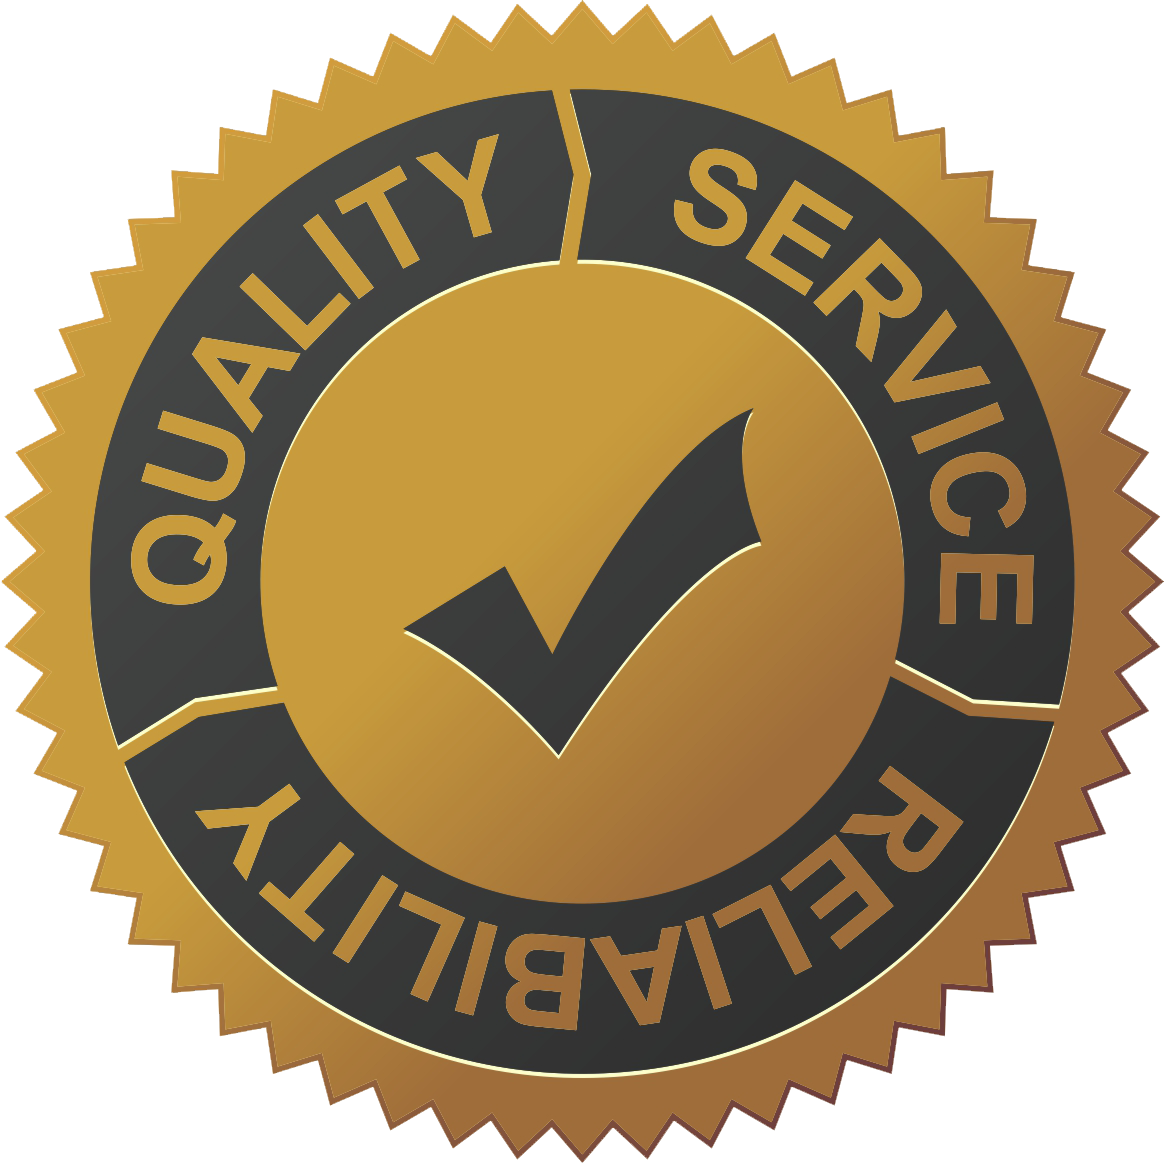 Картинка про качество. Высокое качество продукции. Значок качества. Надежность качество иконка. Гарантия качество надежность.